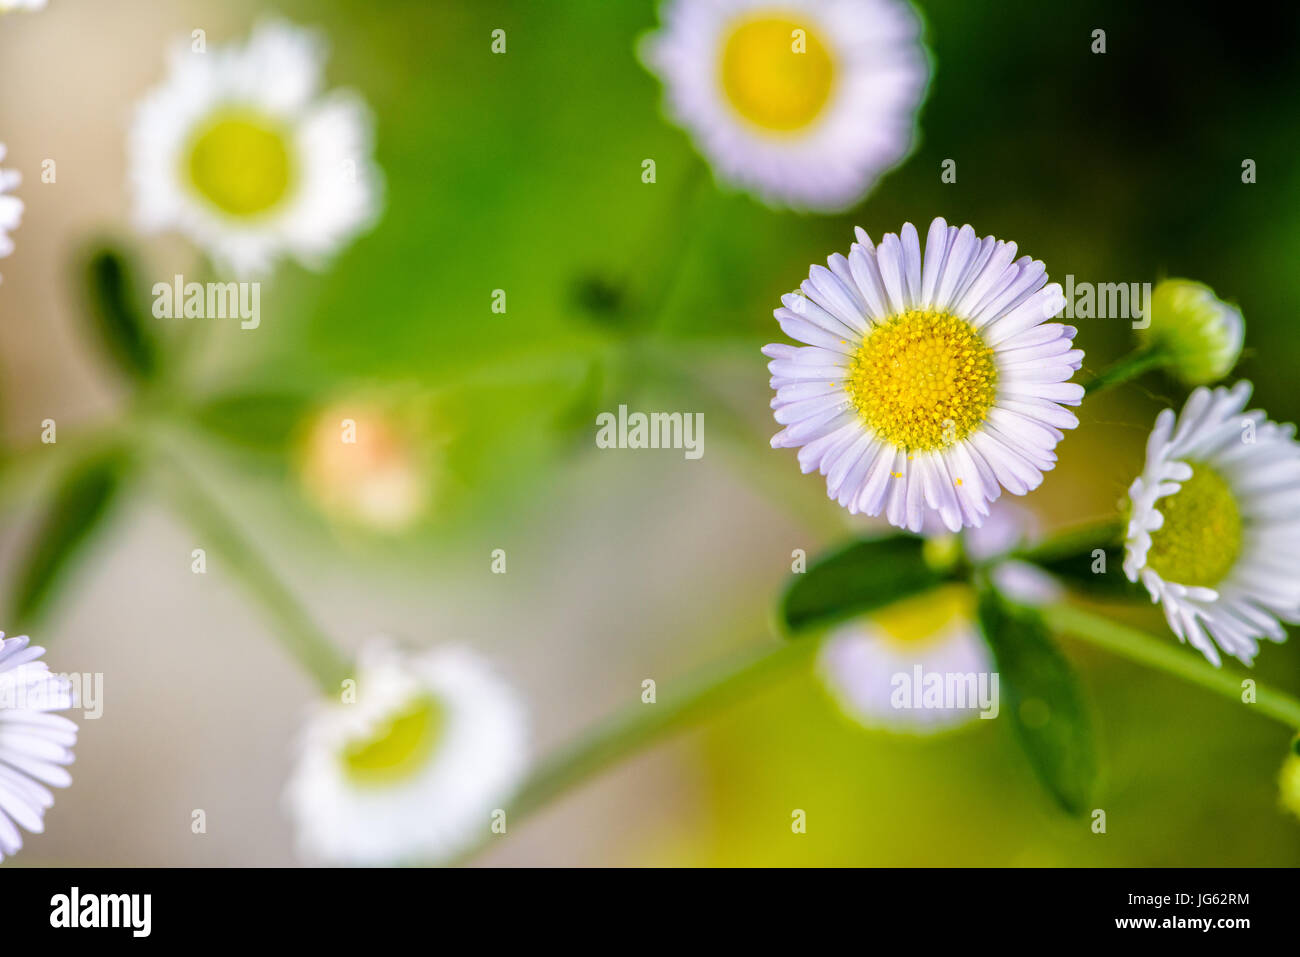 Closeup piccolo e bellissimo fiore con polline di giallo e bianco petalo di Bellis perennis, comune Daisy, Prato Daisy, Woundwort, Bruisewort o inglese Daisy Foto Stock